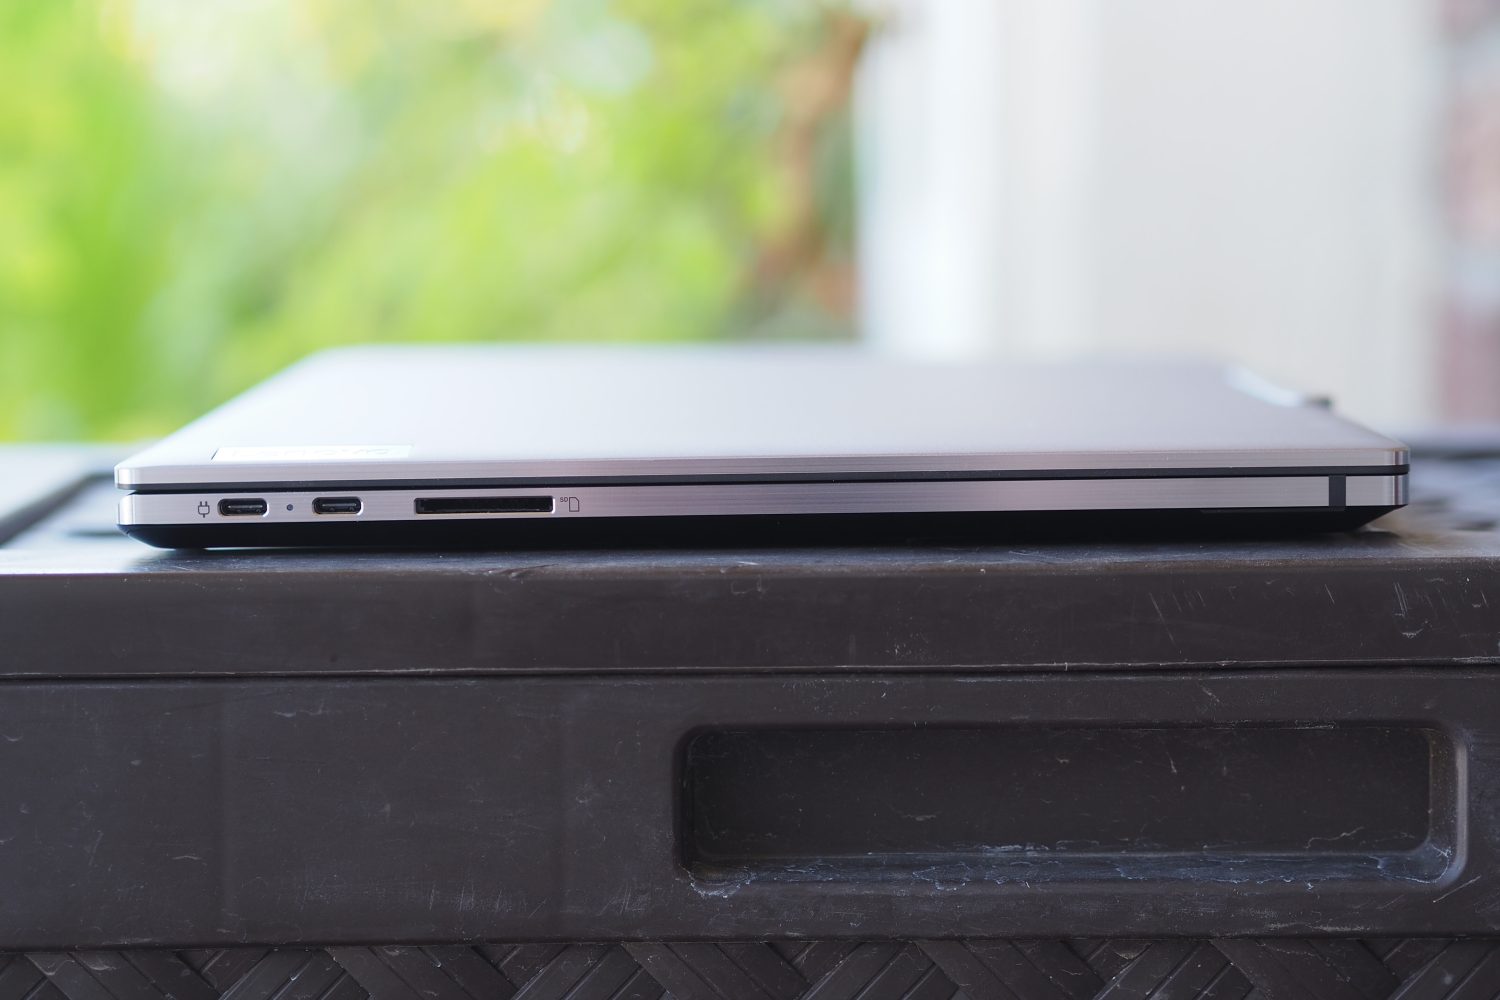 Vista lateral esquerda do Lenovo ThinkPad Z16 mostrando as portas.